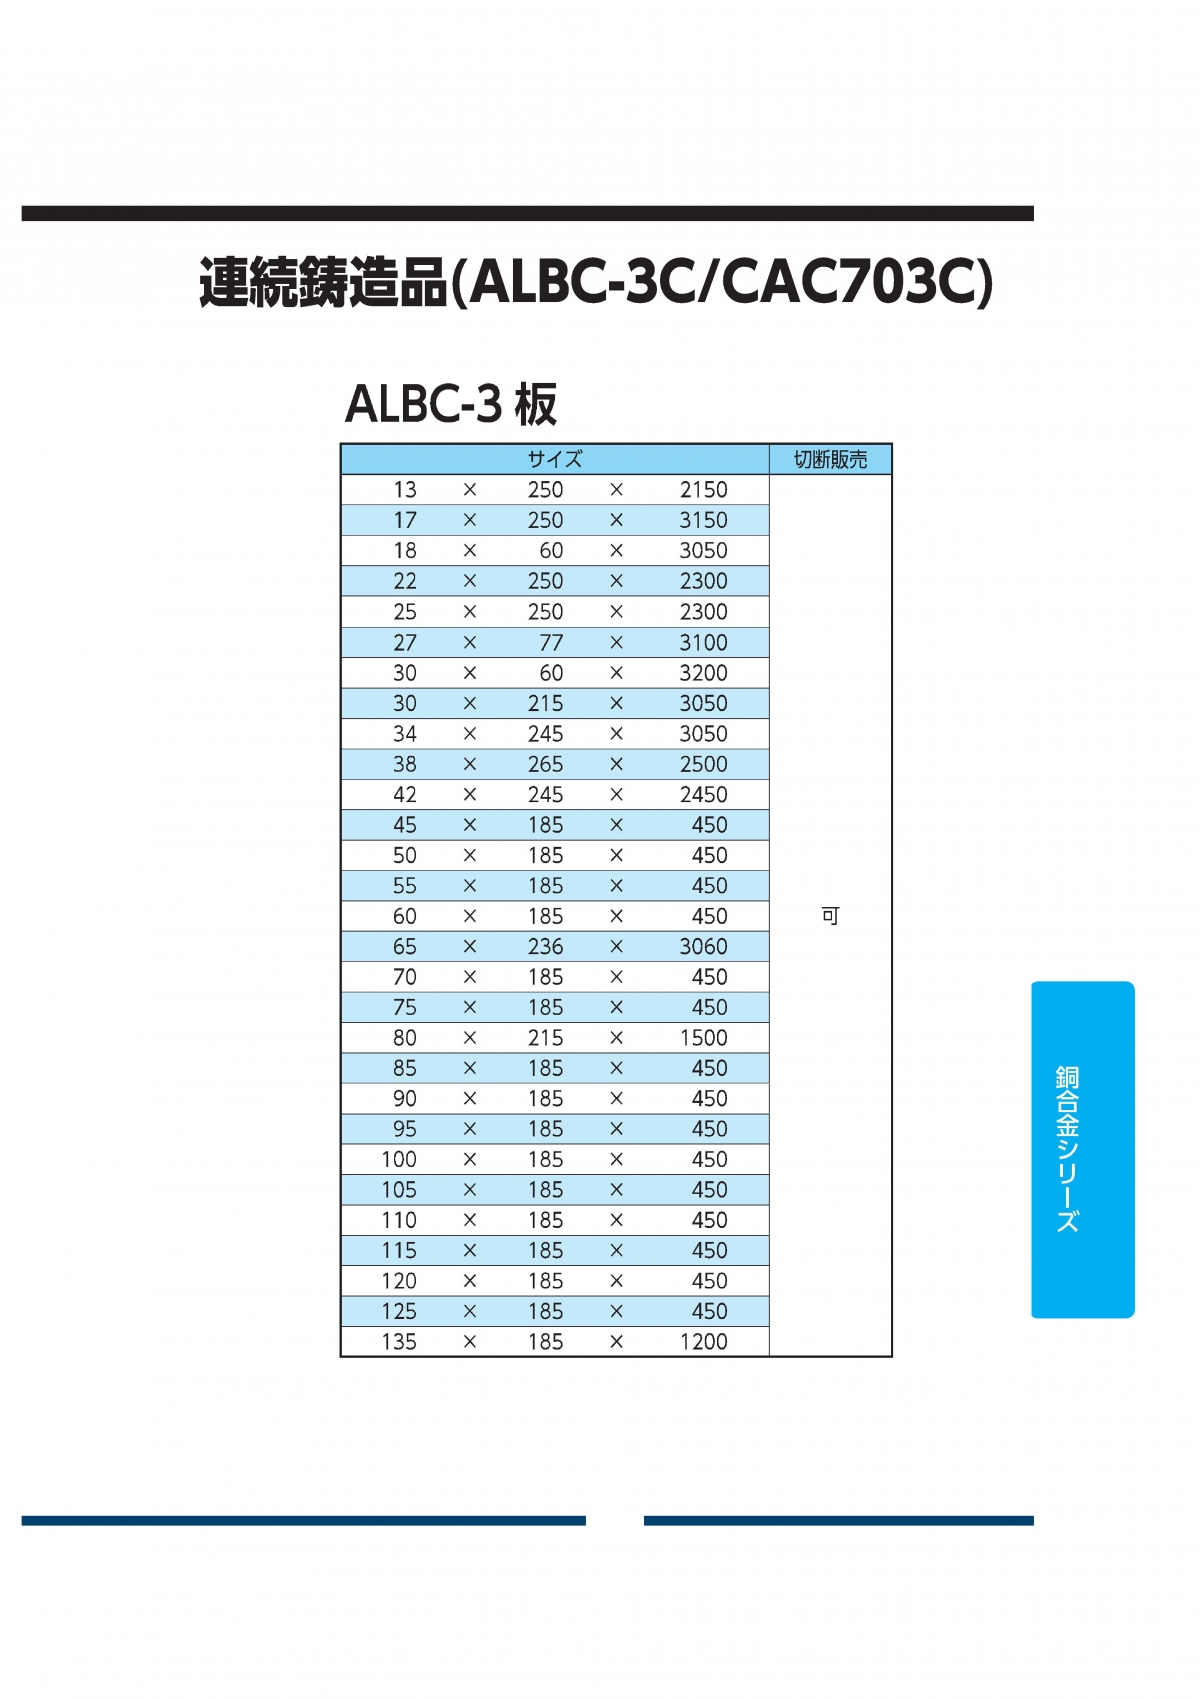 ALBC-3板(CAC703C)